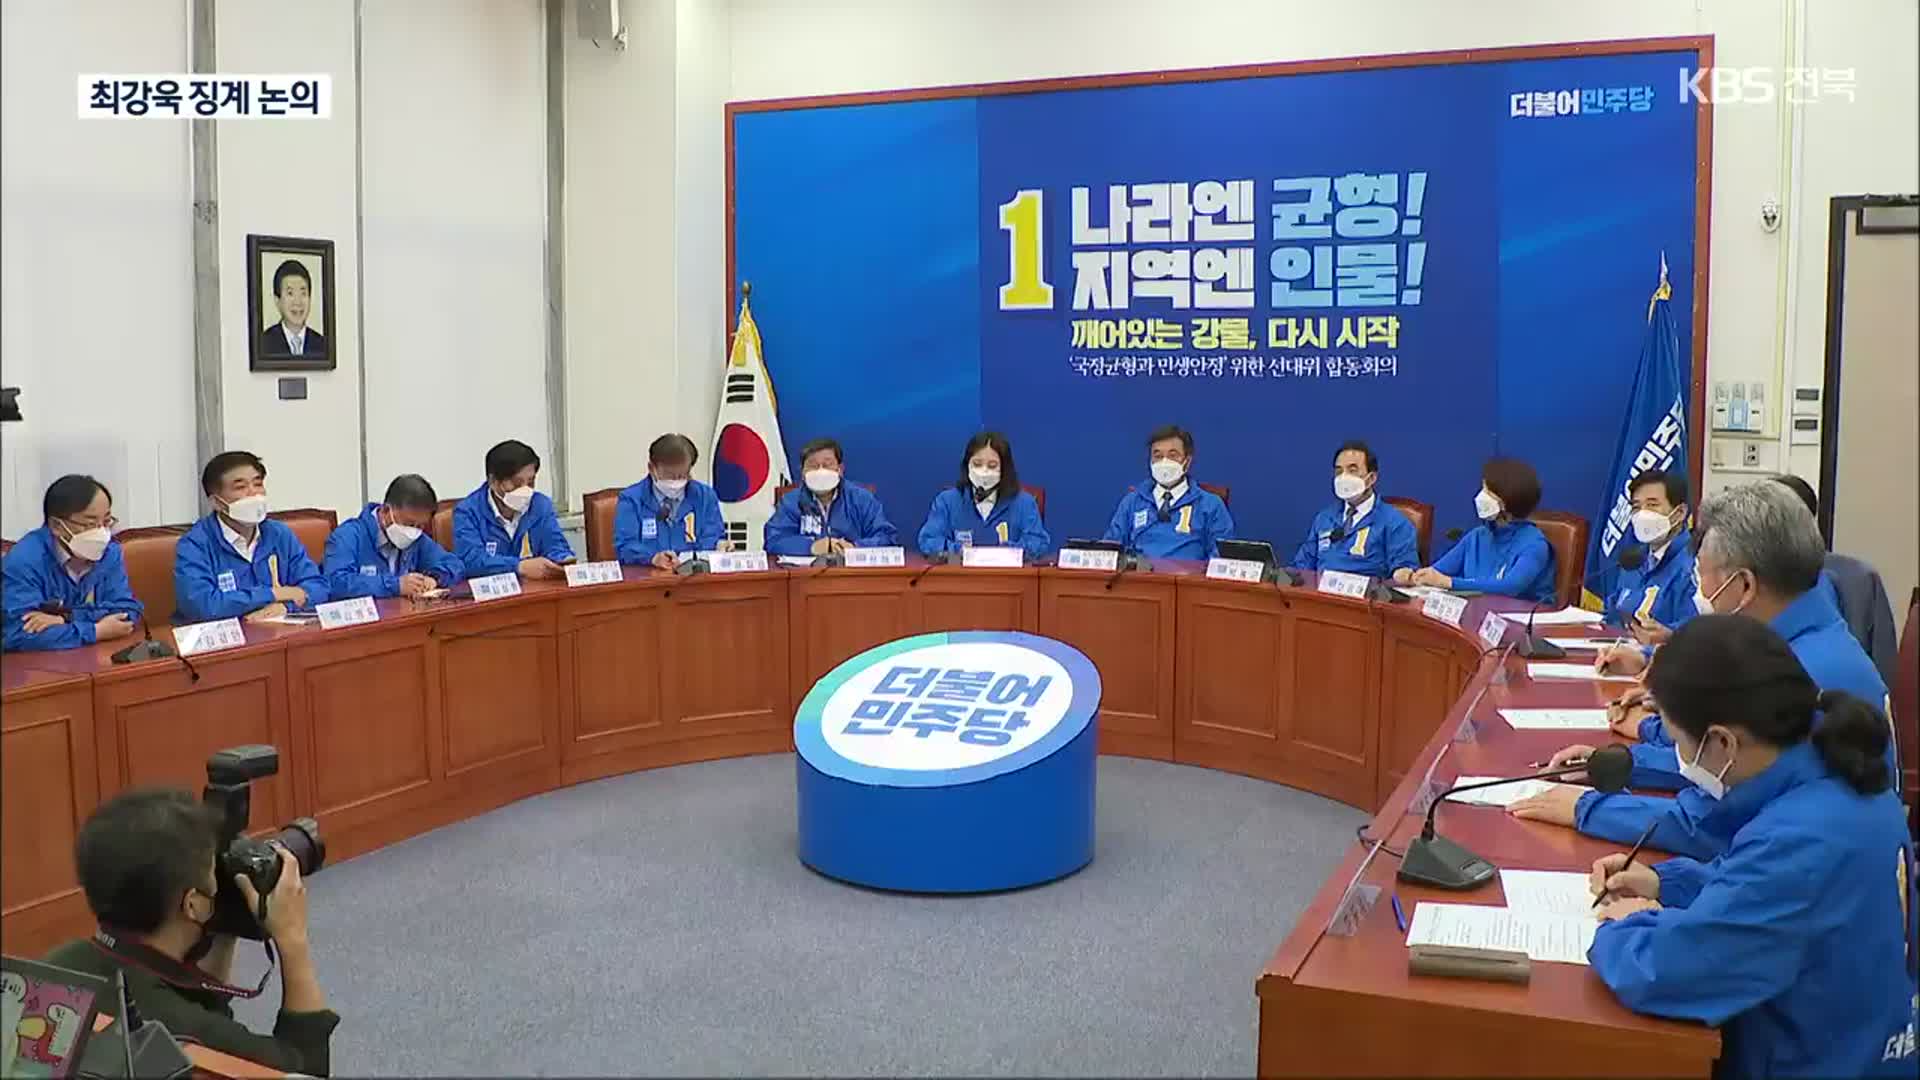 ‘성희롱 발언’ 최강욱 징계 논의…박지현 “중징계해야”